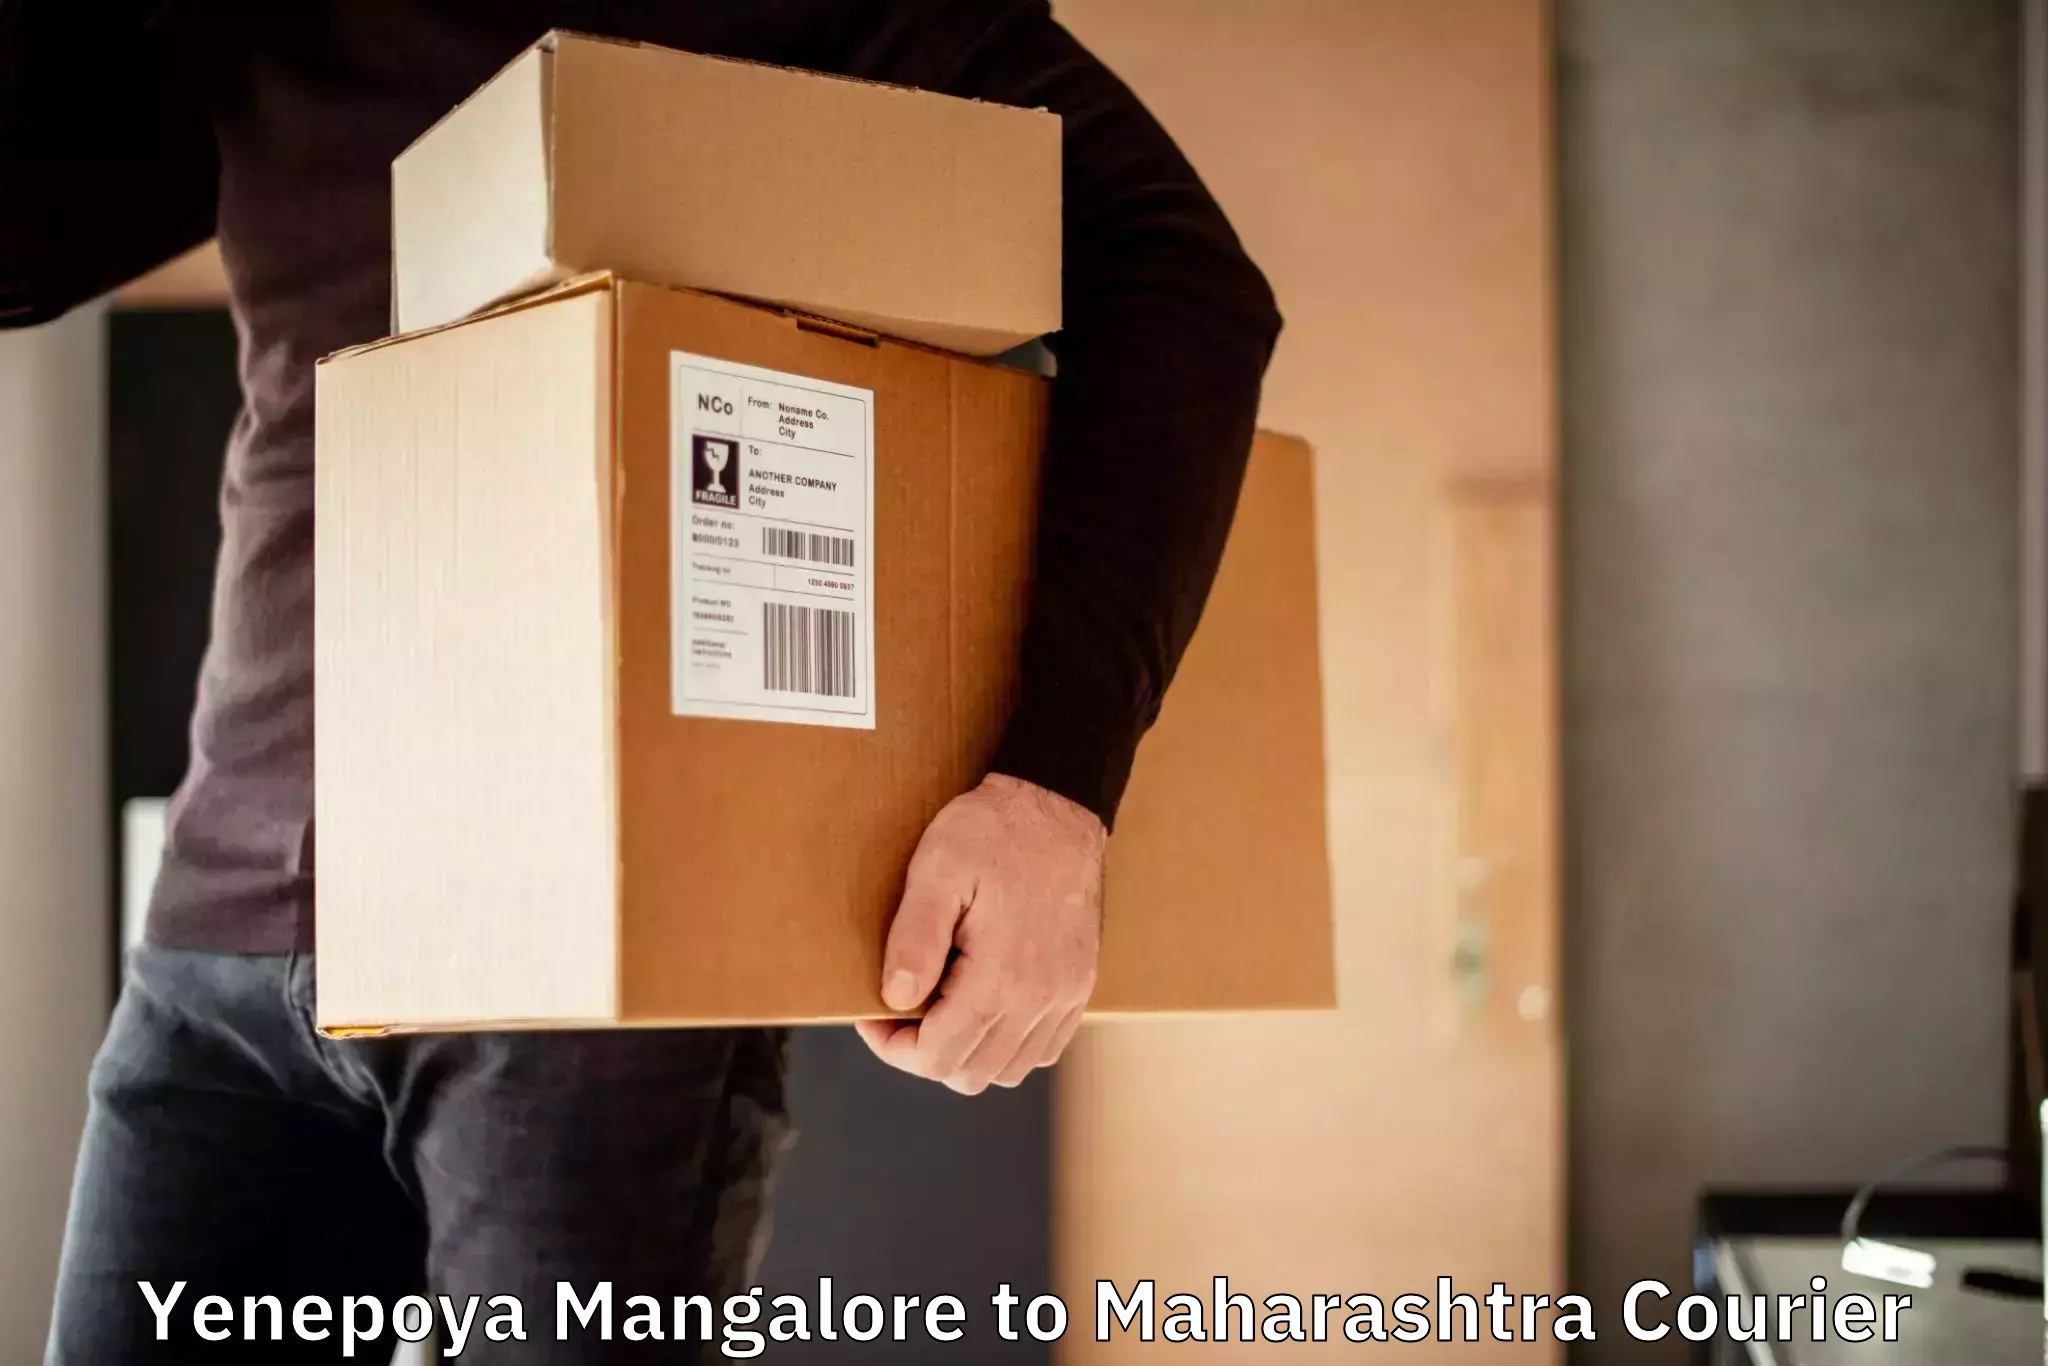 Secure shipping methods Yenepoya Mangalore to Palghar